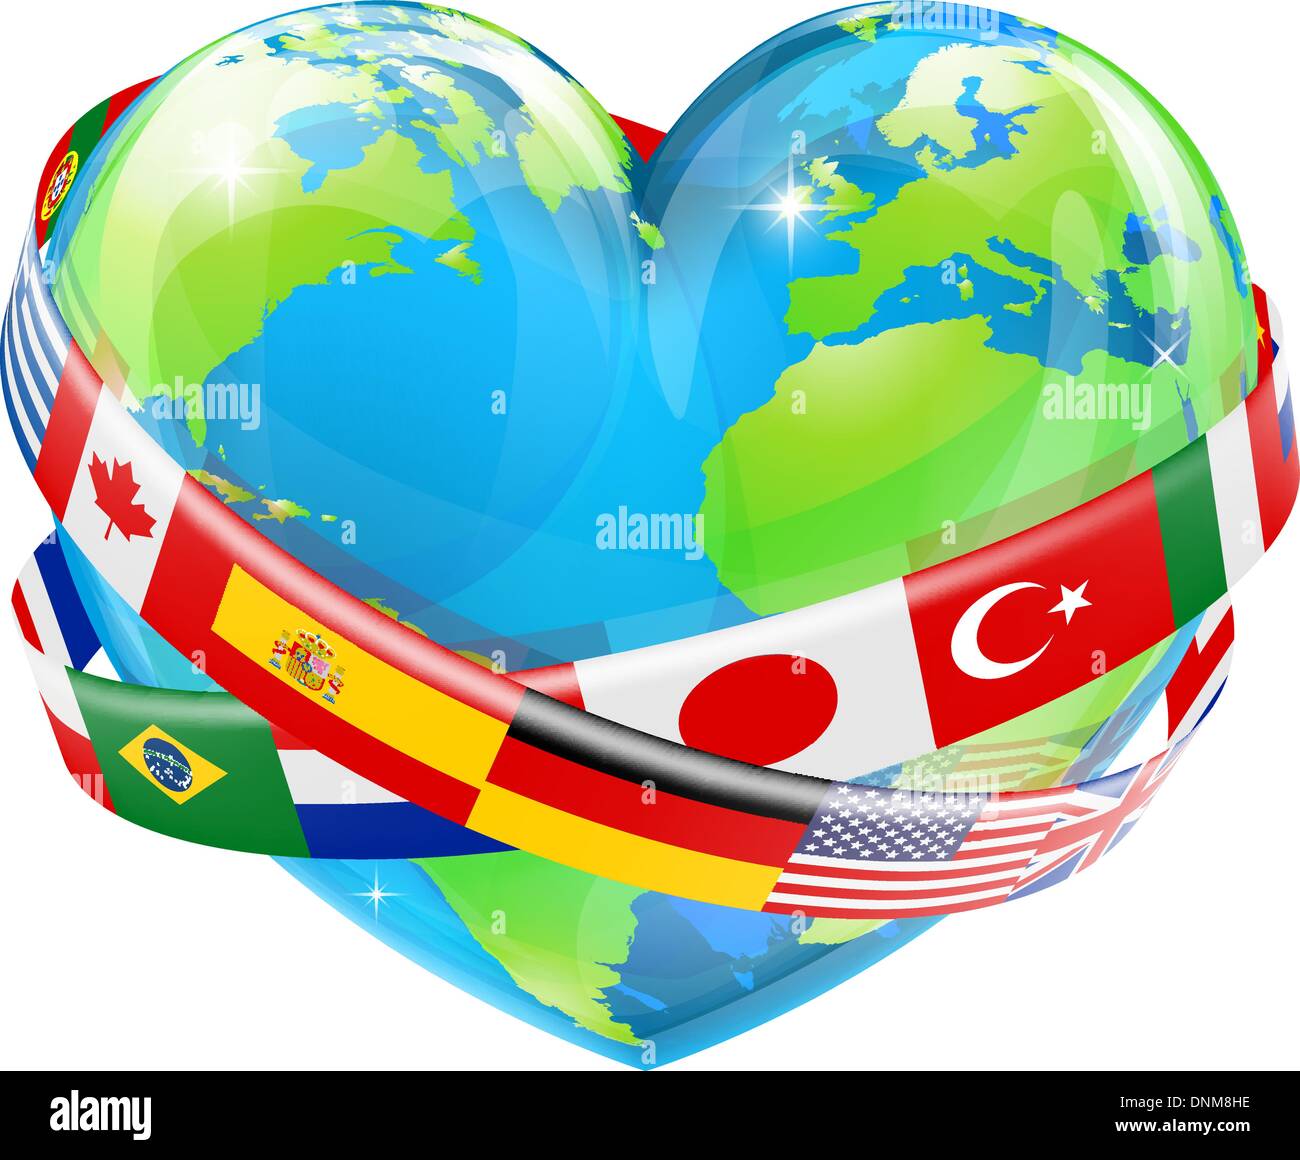 Une illustration d'un monde en forme de coeur globe terrestre avec les drapeaux de nombreux pays différents volant autour d'elle. Illustration de Vecteur